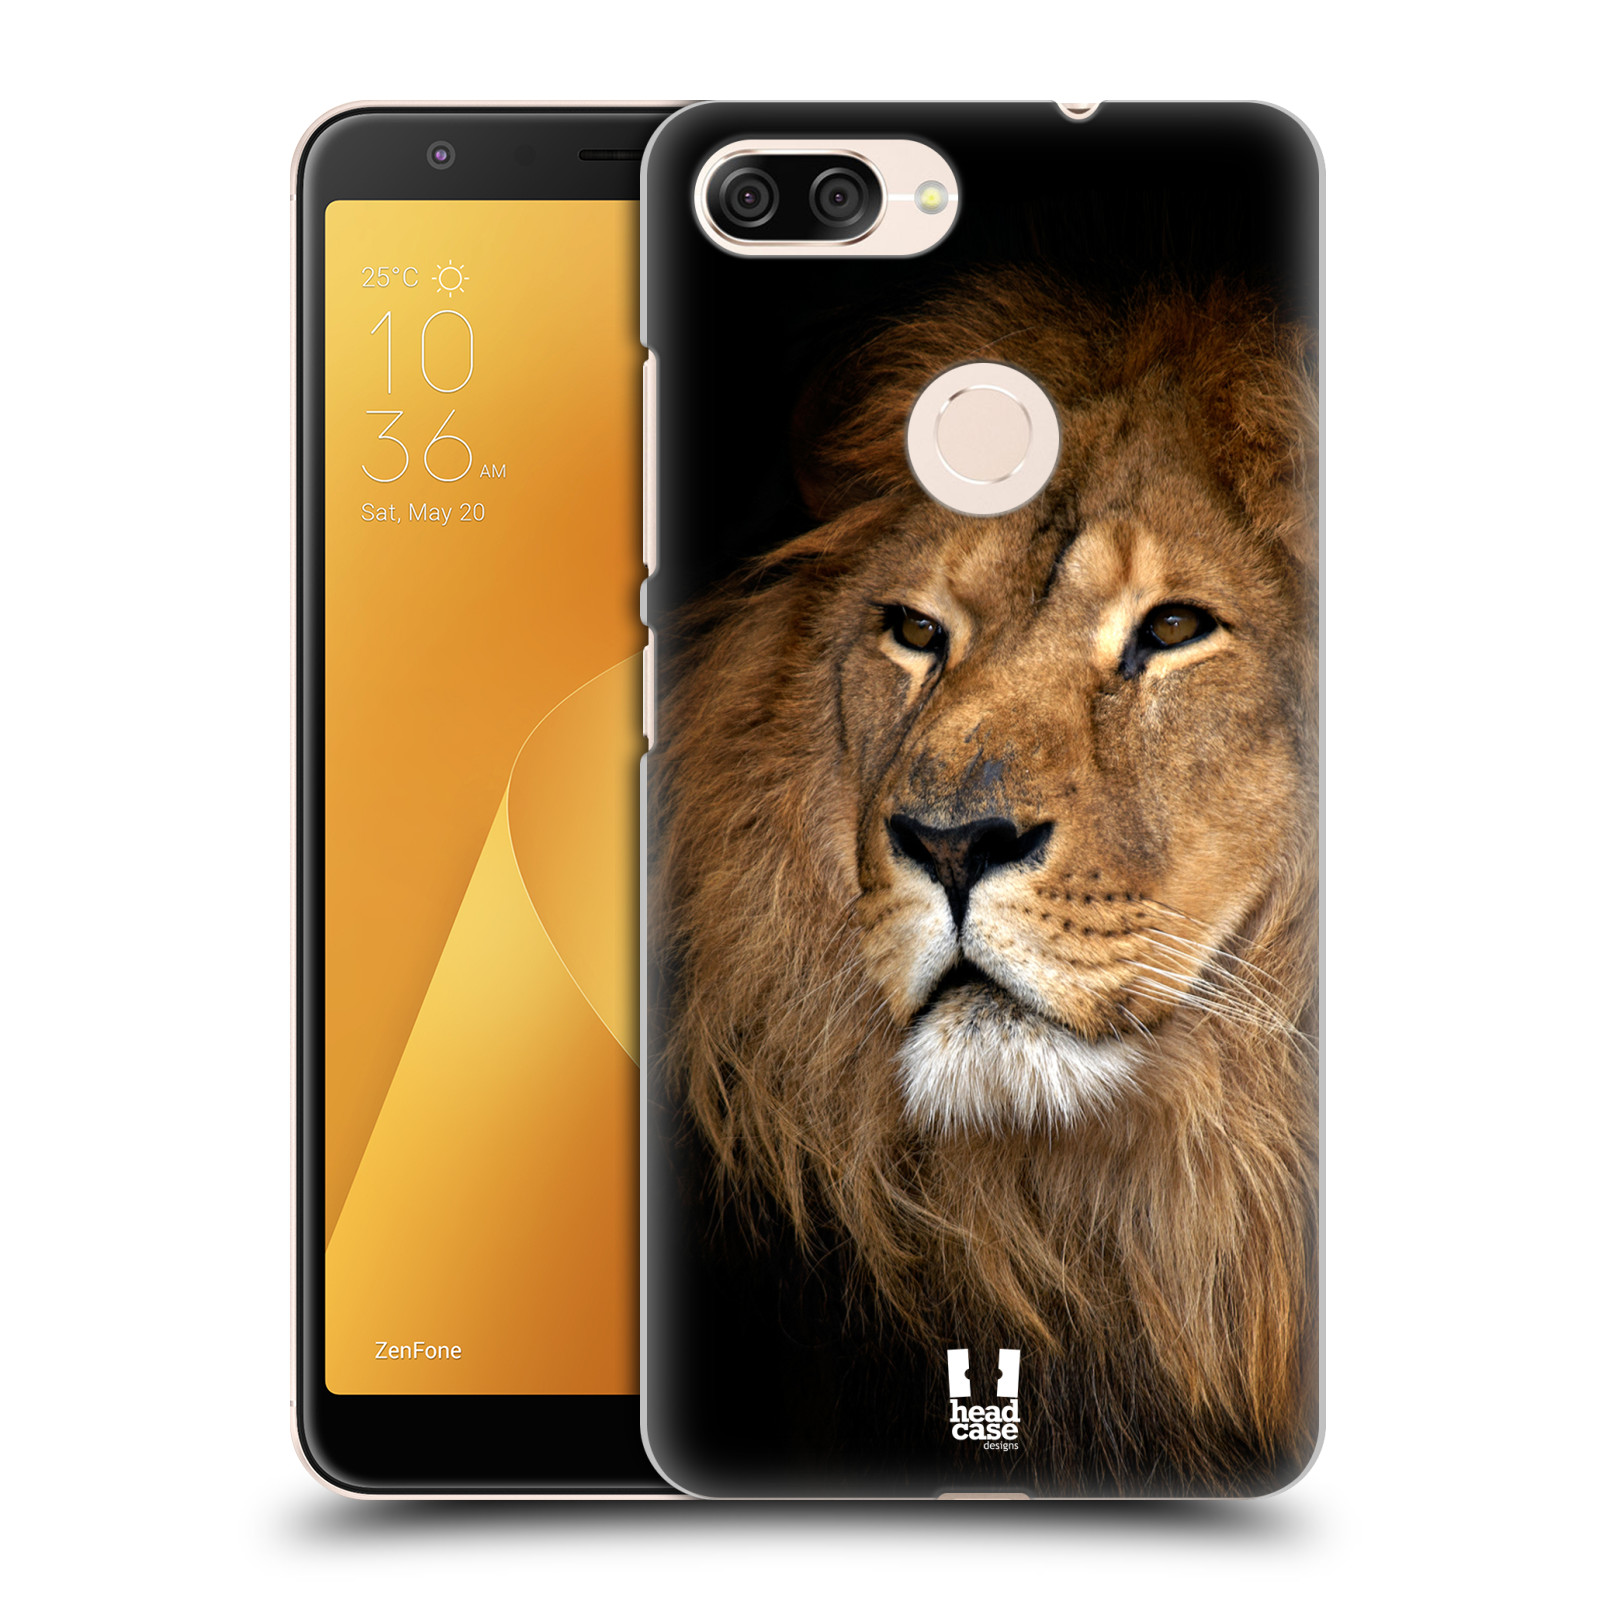 Zadní obal pro mobil Asus Zenfone Max Plus (M1) - HEAD CASE - Svět zvířat král zvířat Lev